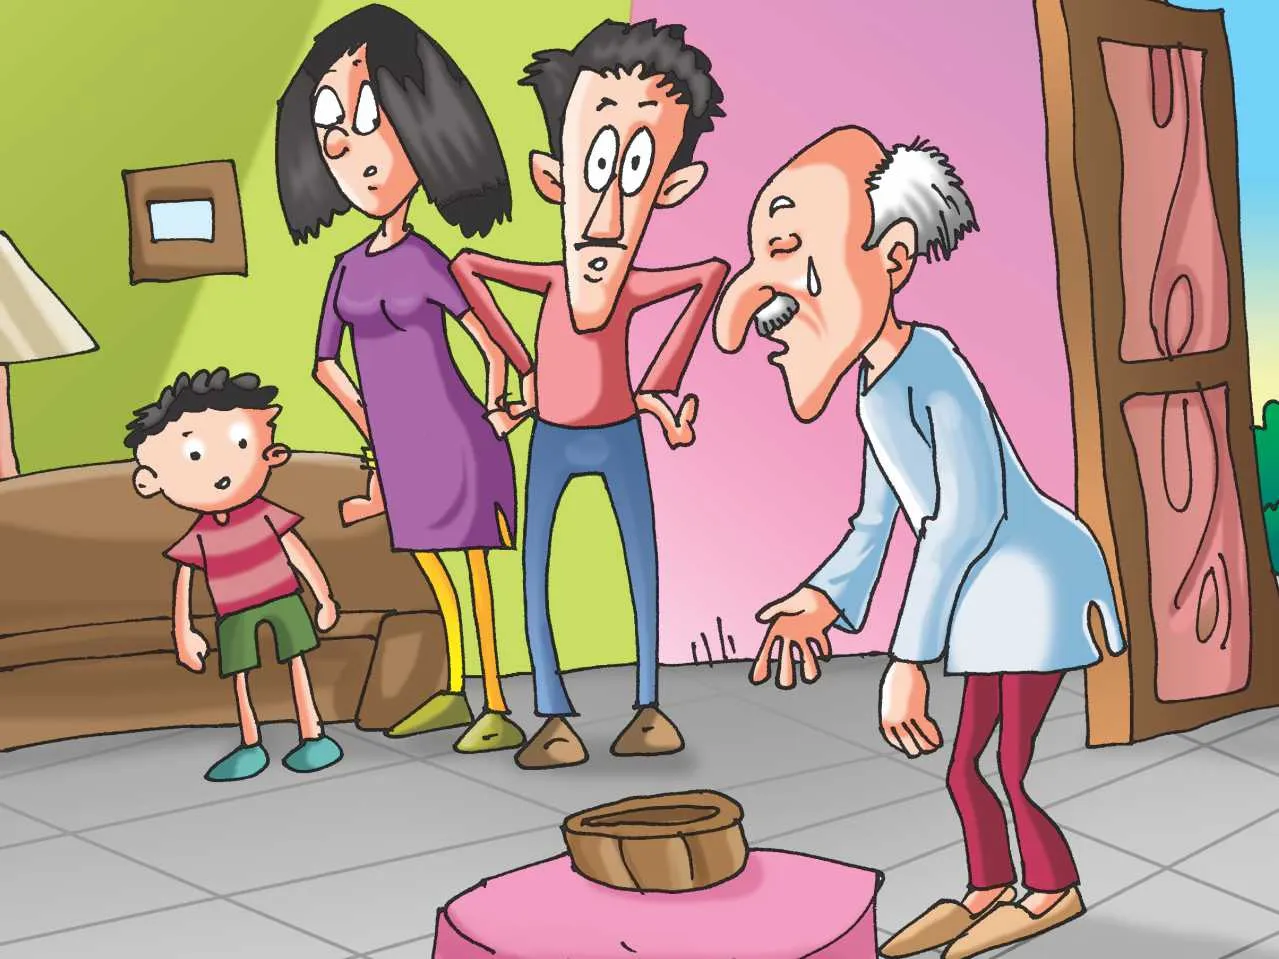 Family cartoon image